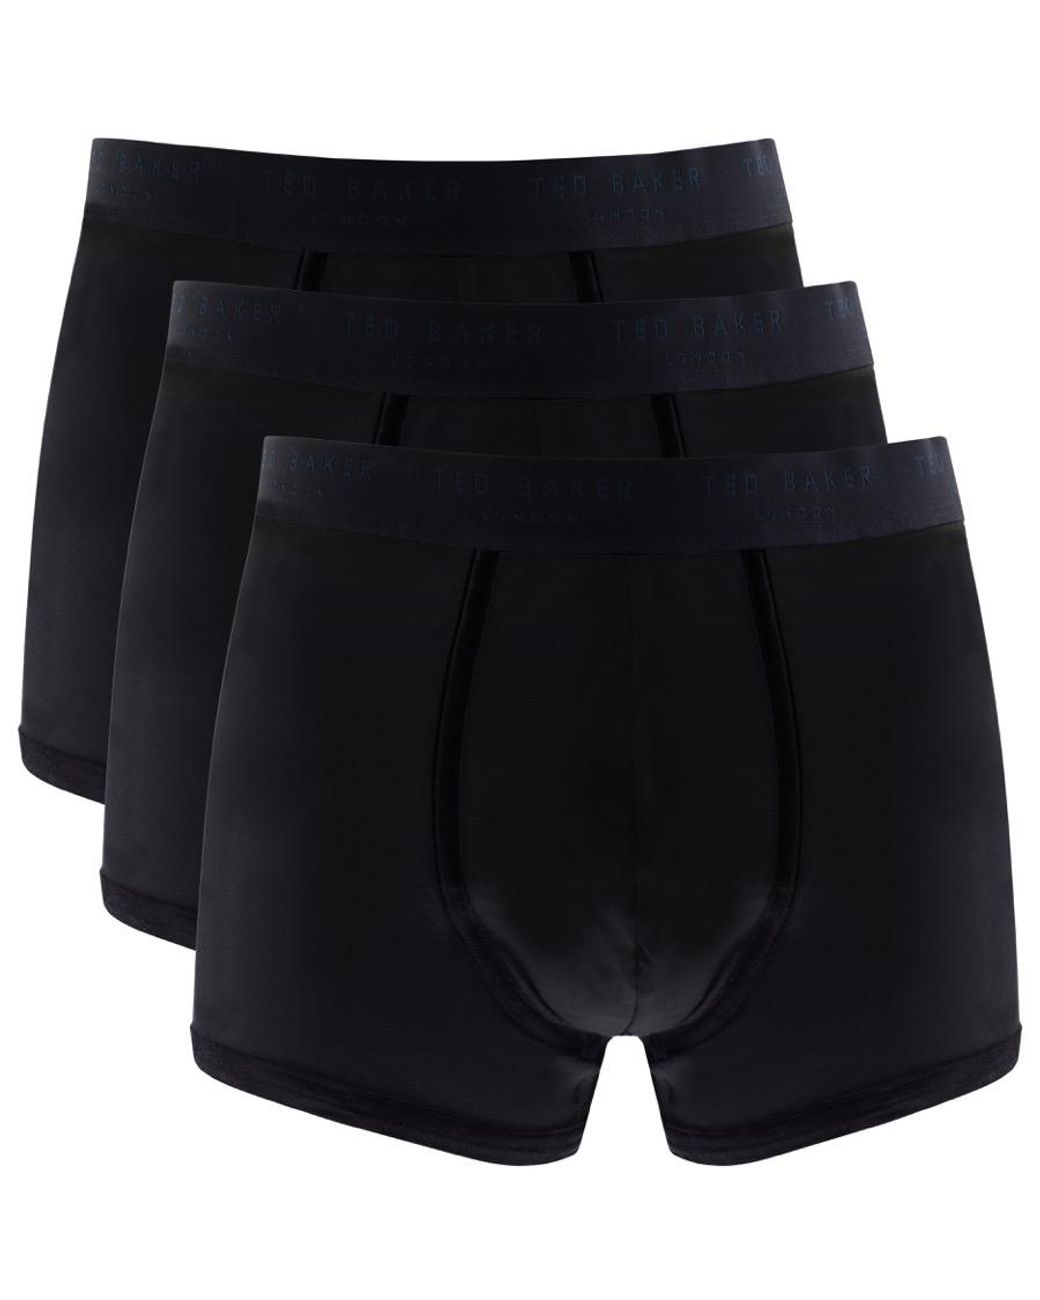 Ted Baker Cotton Underwear Triple Pack Boxer Trunks in Black for Men - Lyst